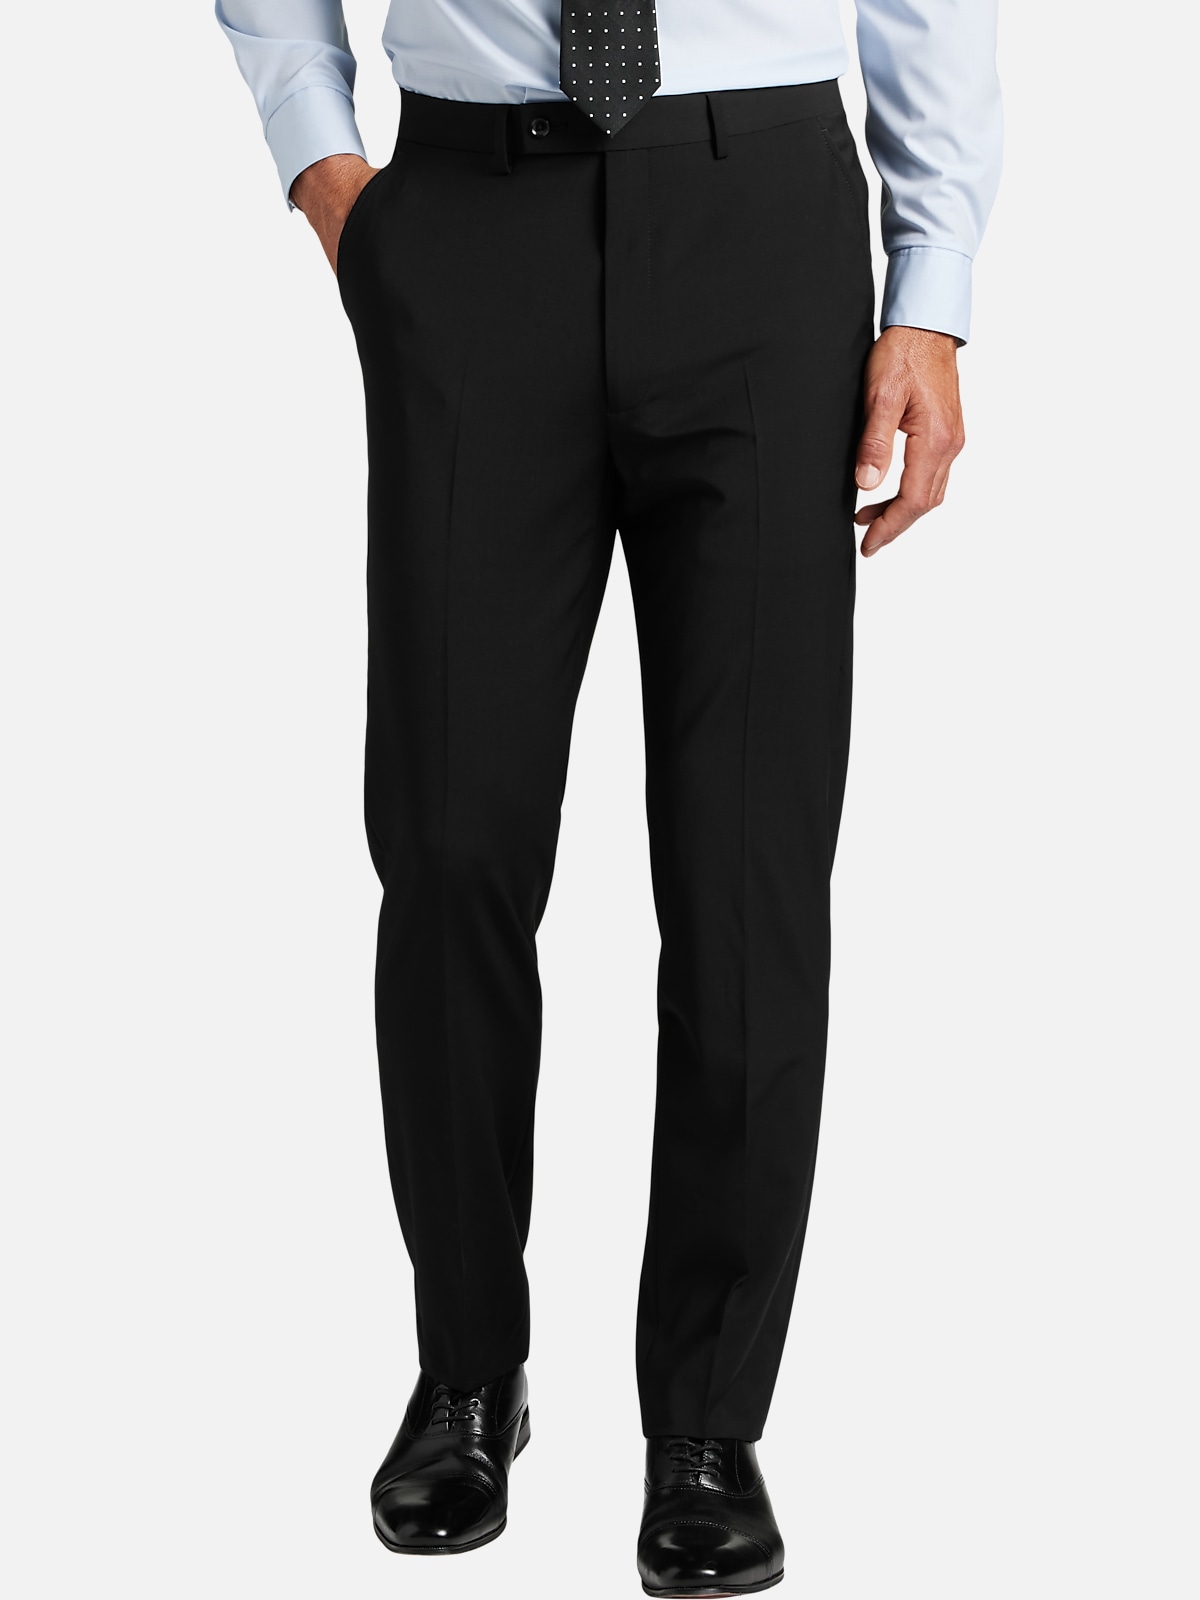 Calvin Klein Slim Fit Suit Separates Pants | New Arrivals| Men's Wearhouse